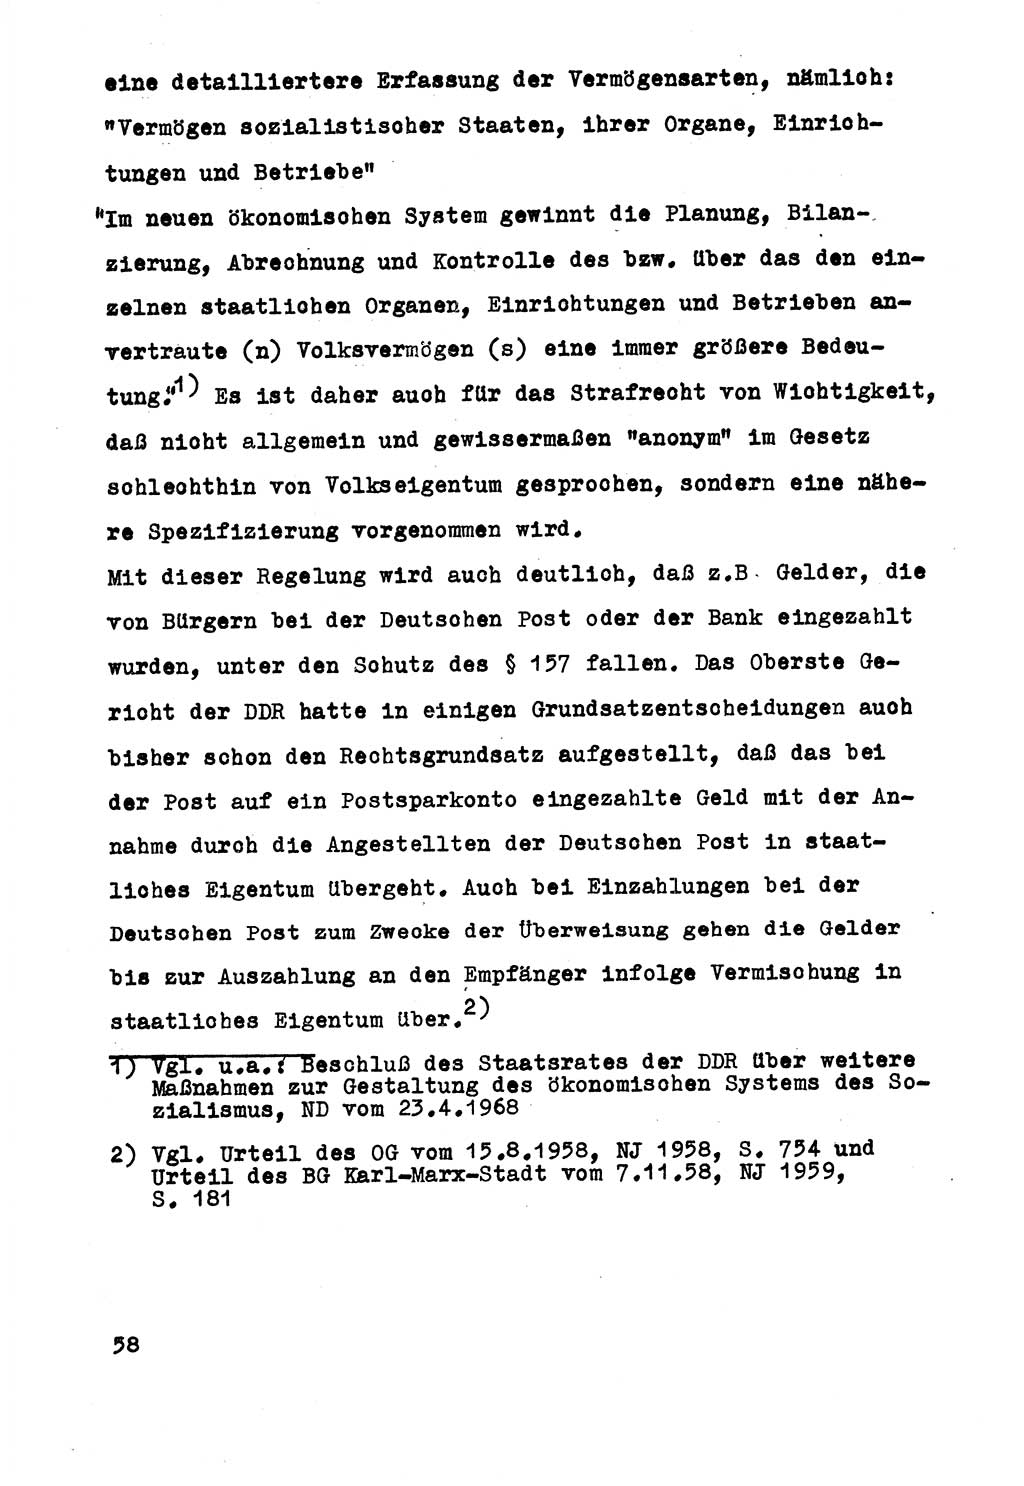 Strafrecht der DDR (Deutsche Demokratische Republik), Besonderer Teil, Lehrmaterial, Heft 5 1970, Seite 58 (Strafr. DDR BT Lehrmat. H. 5 1970, S. 58)